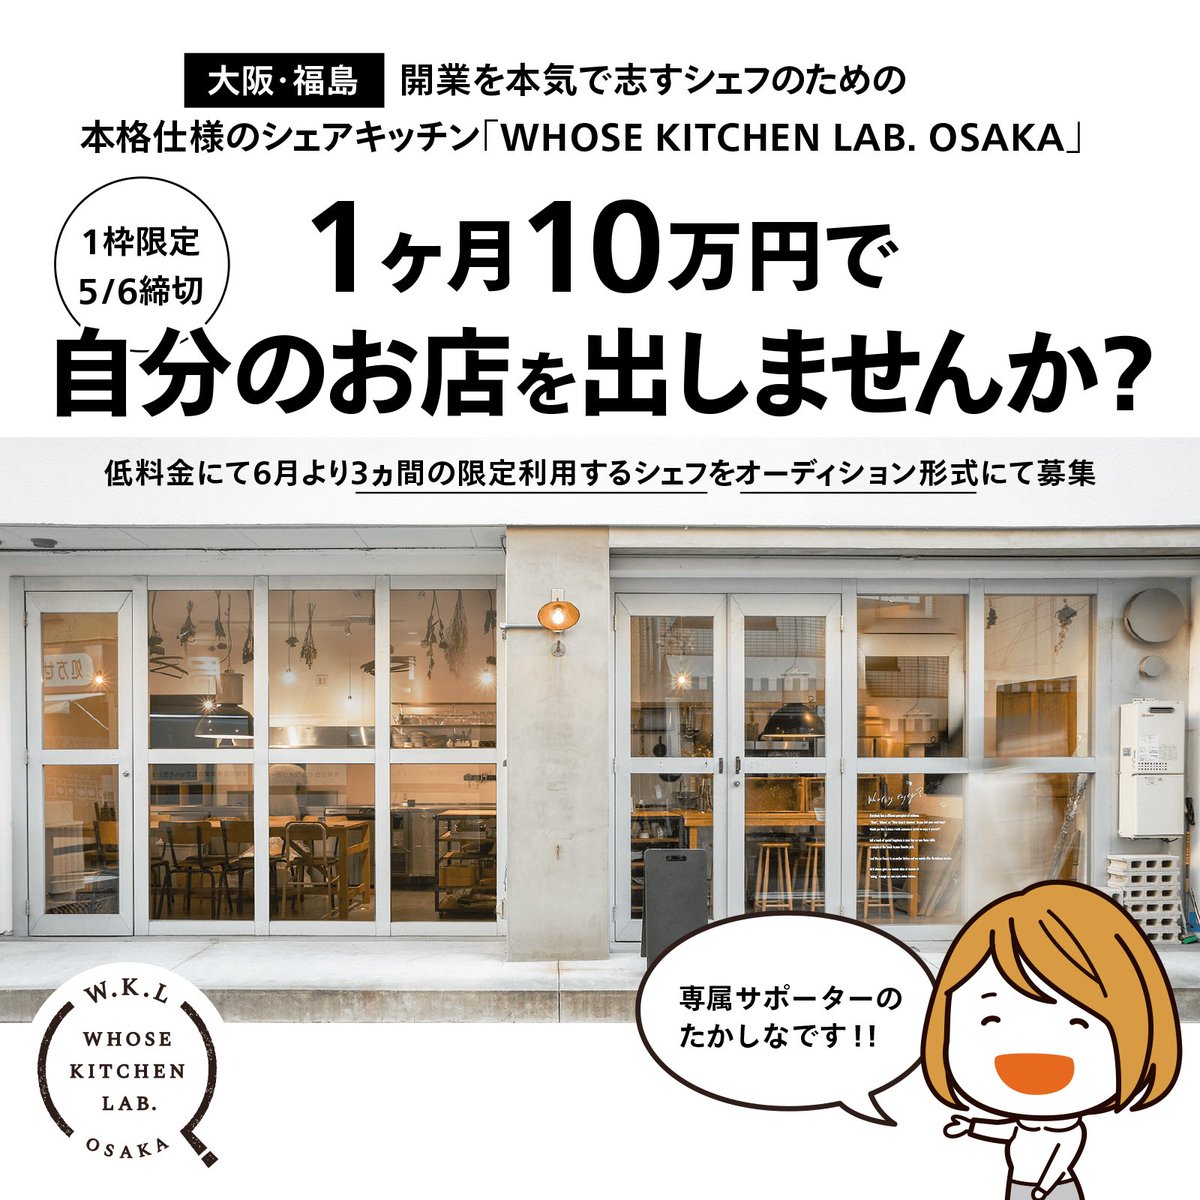 じぶんのお店を持ちたいシェフ、パティシエさんいませんか。シェアキッチンの「WHOSE KITCHEN LAB. OSAKA」さんが「1ヶ月10万円で大阪の福島にお店を出せる」シェフオーディションを開催中です。5/6締切です。

・… 